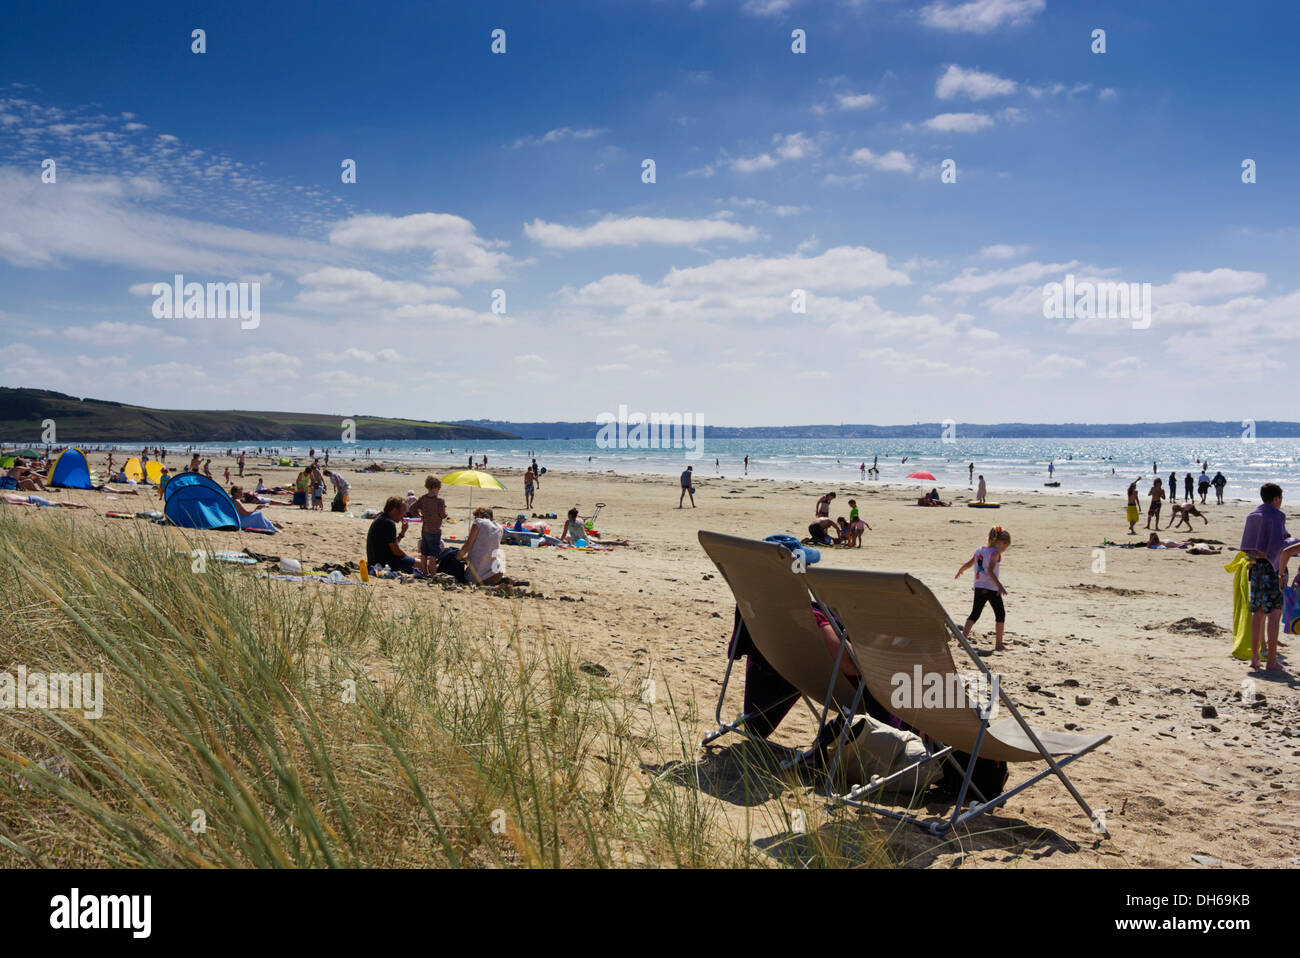 Les baigneurs sur la plage de l'Atlantique du Finistère, Bretagne, France, Europe, publicground Banque D'Images